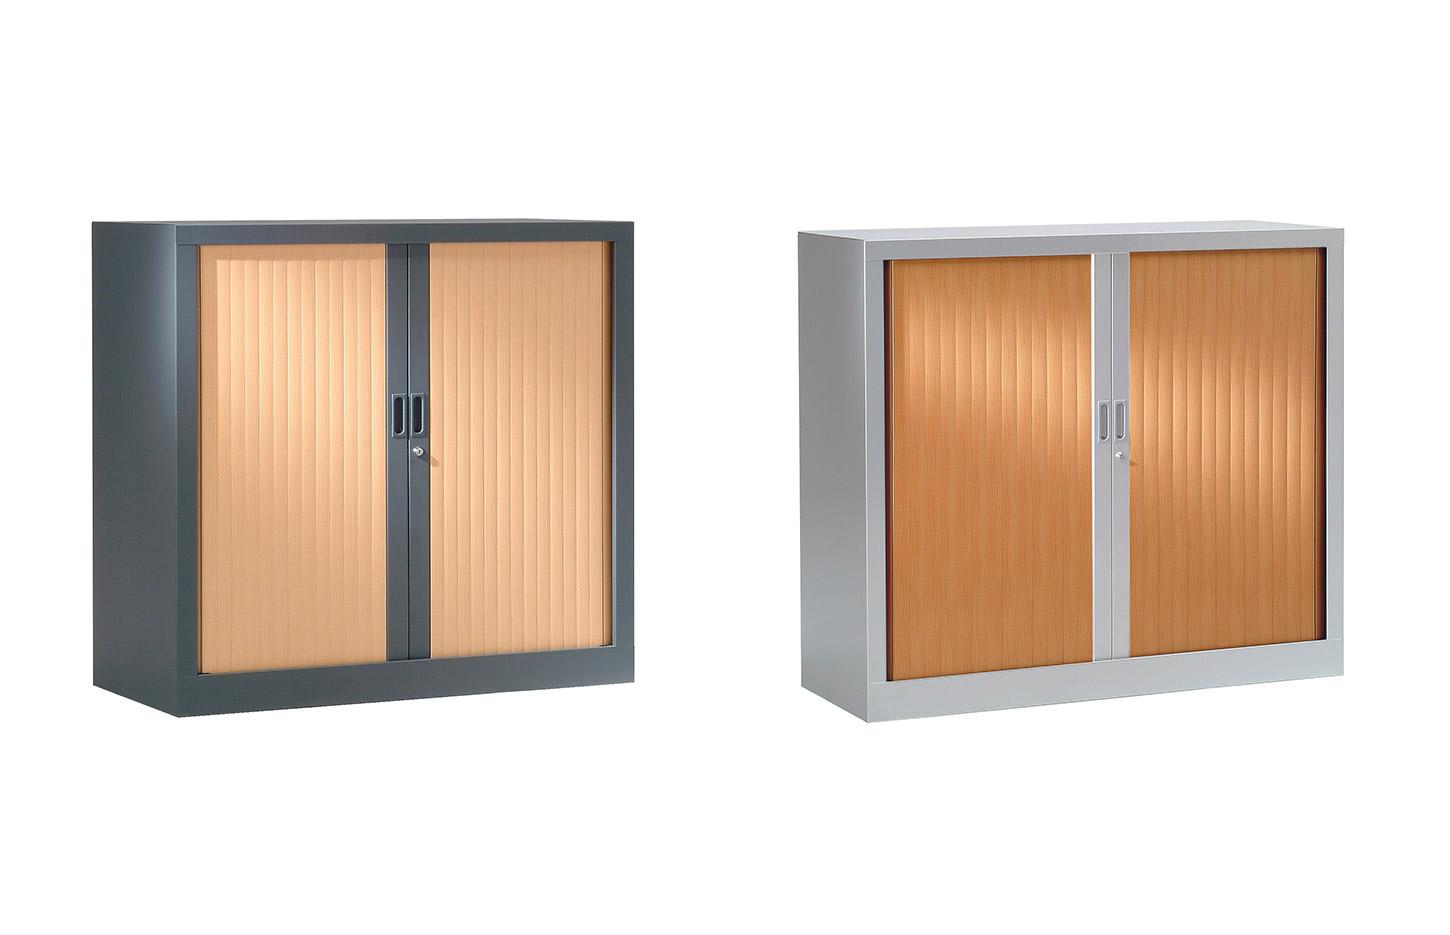 Rangement de bureau, avec portes en bois ou de couleurs, Fabrication Française, gamme Dolomites - France Bureau